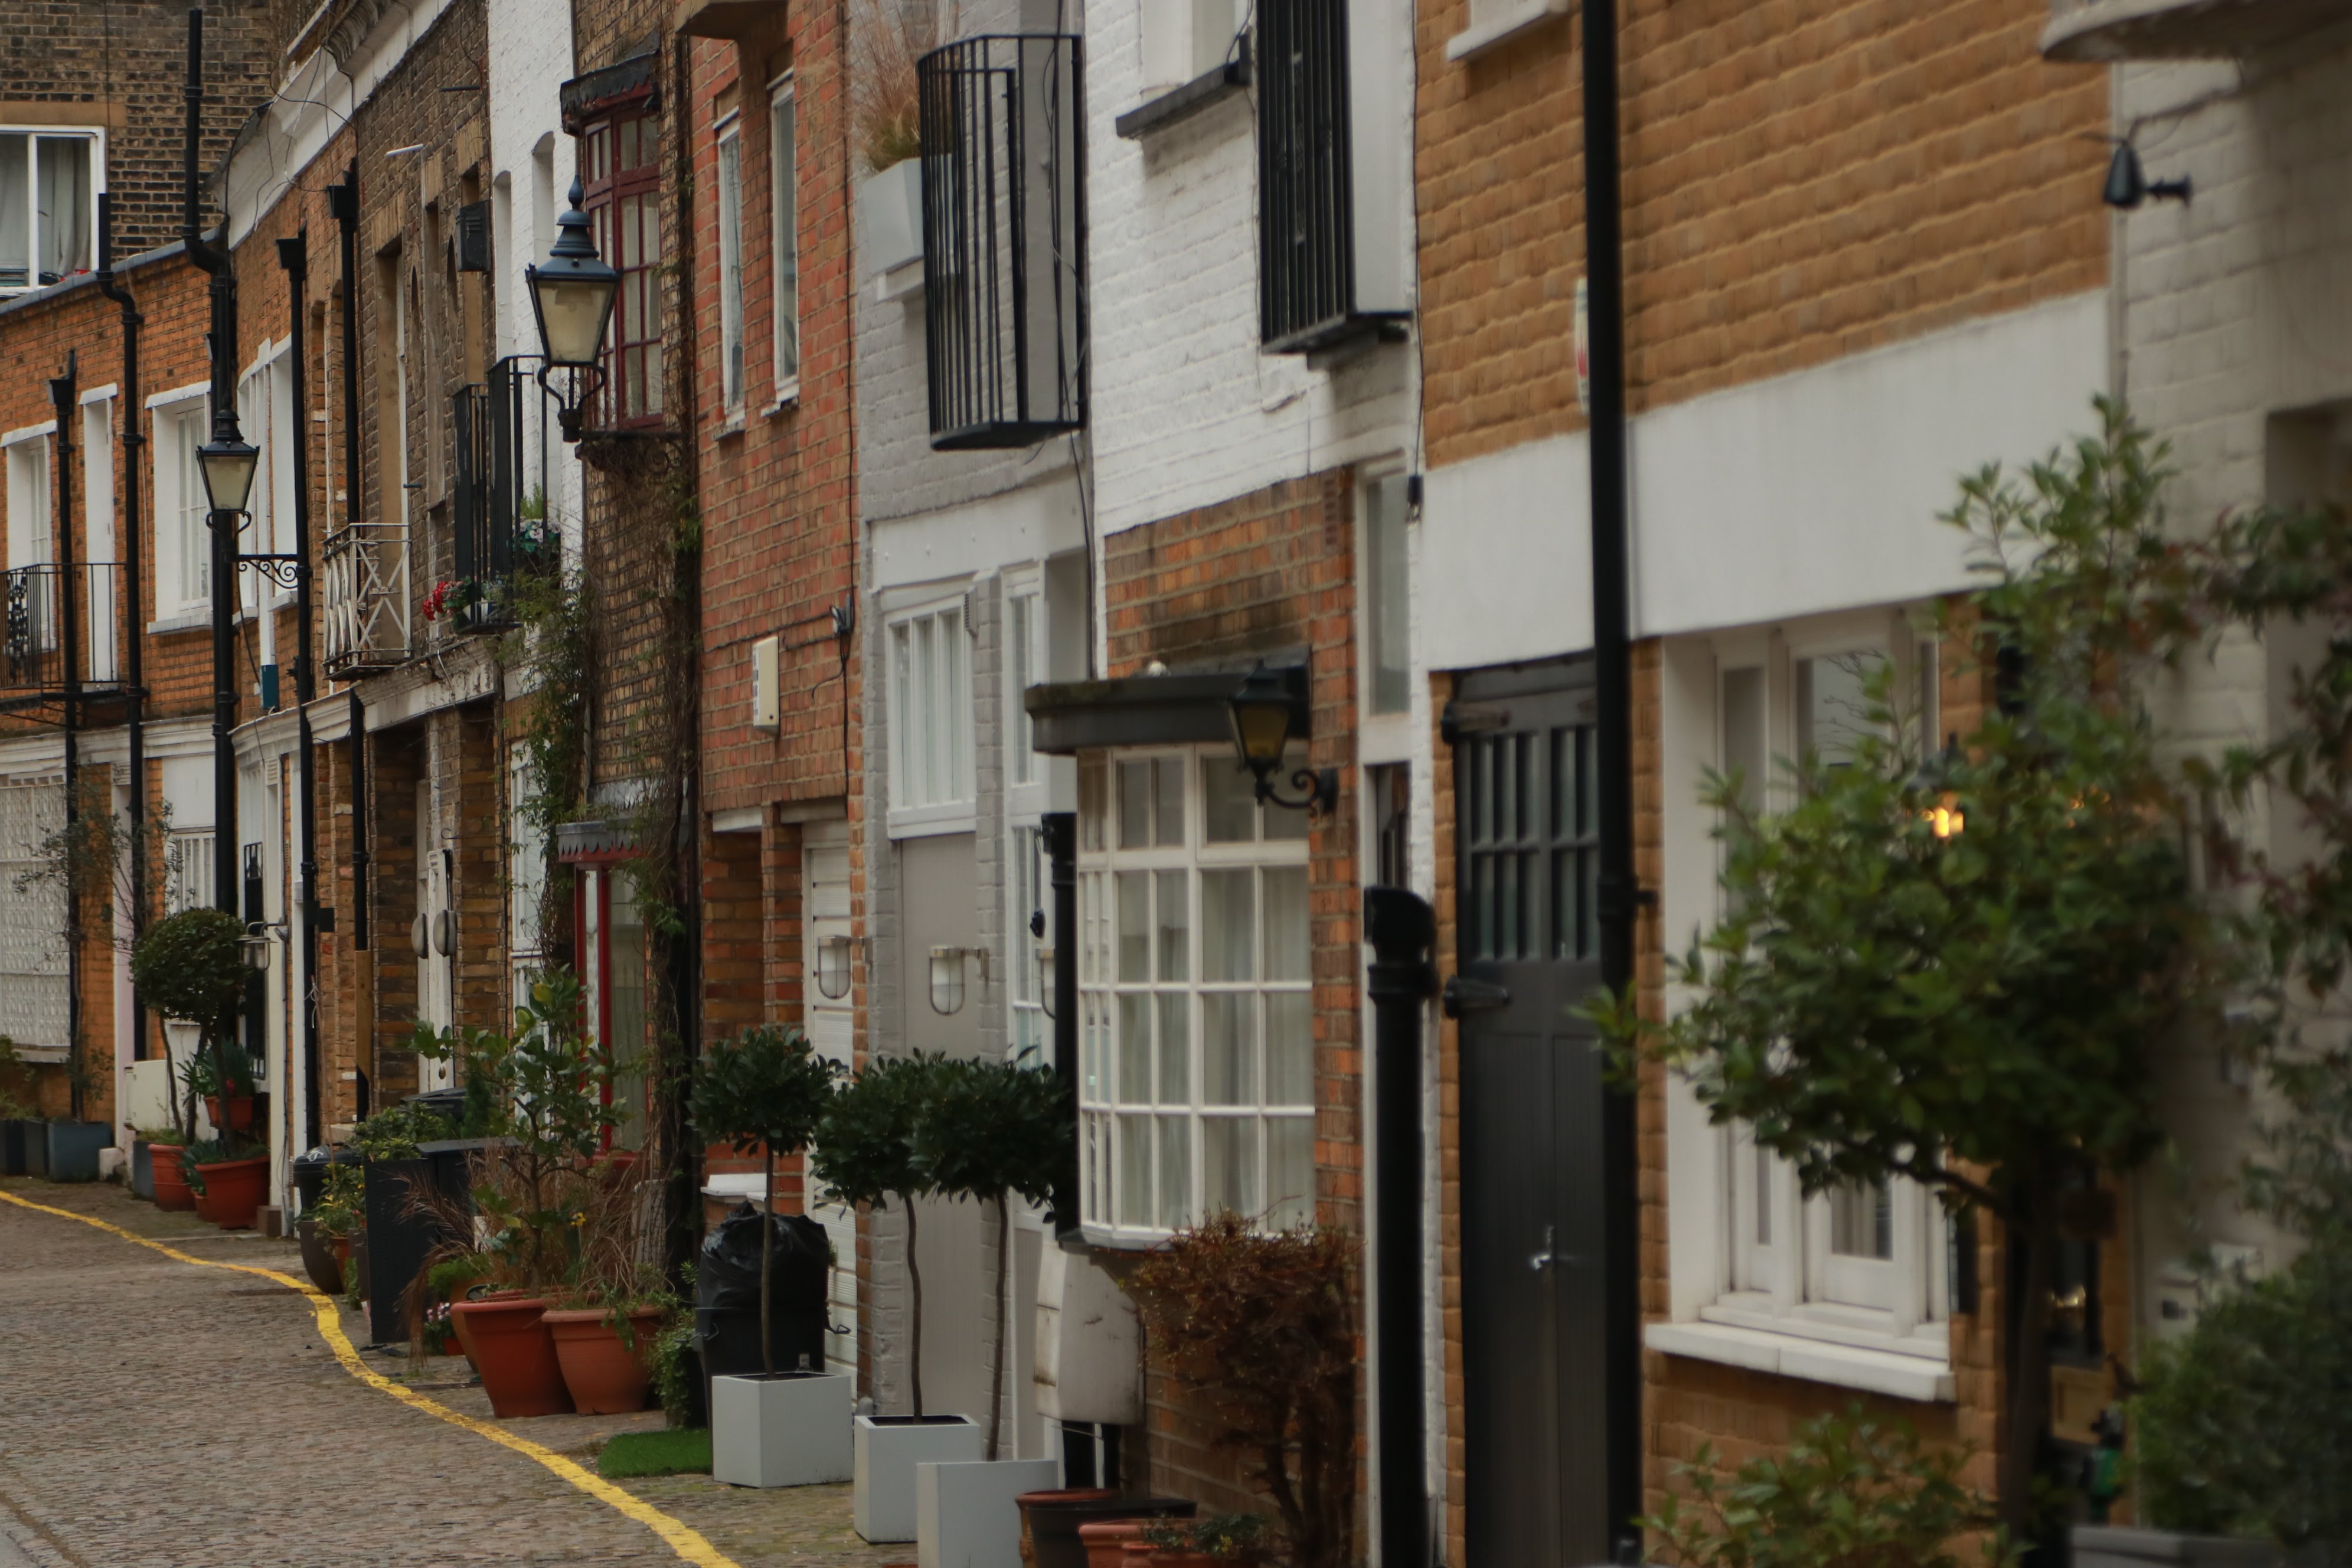 rua em londres com casas tradicionais e hotéis no bairro de kensington. Rua bonita em Londres com estilo bem tradicional com casas de tijolo e iluminação